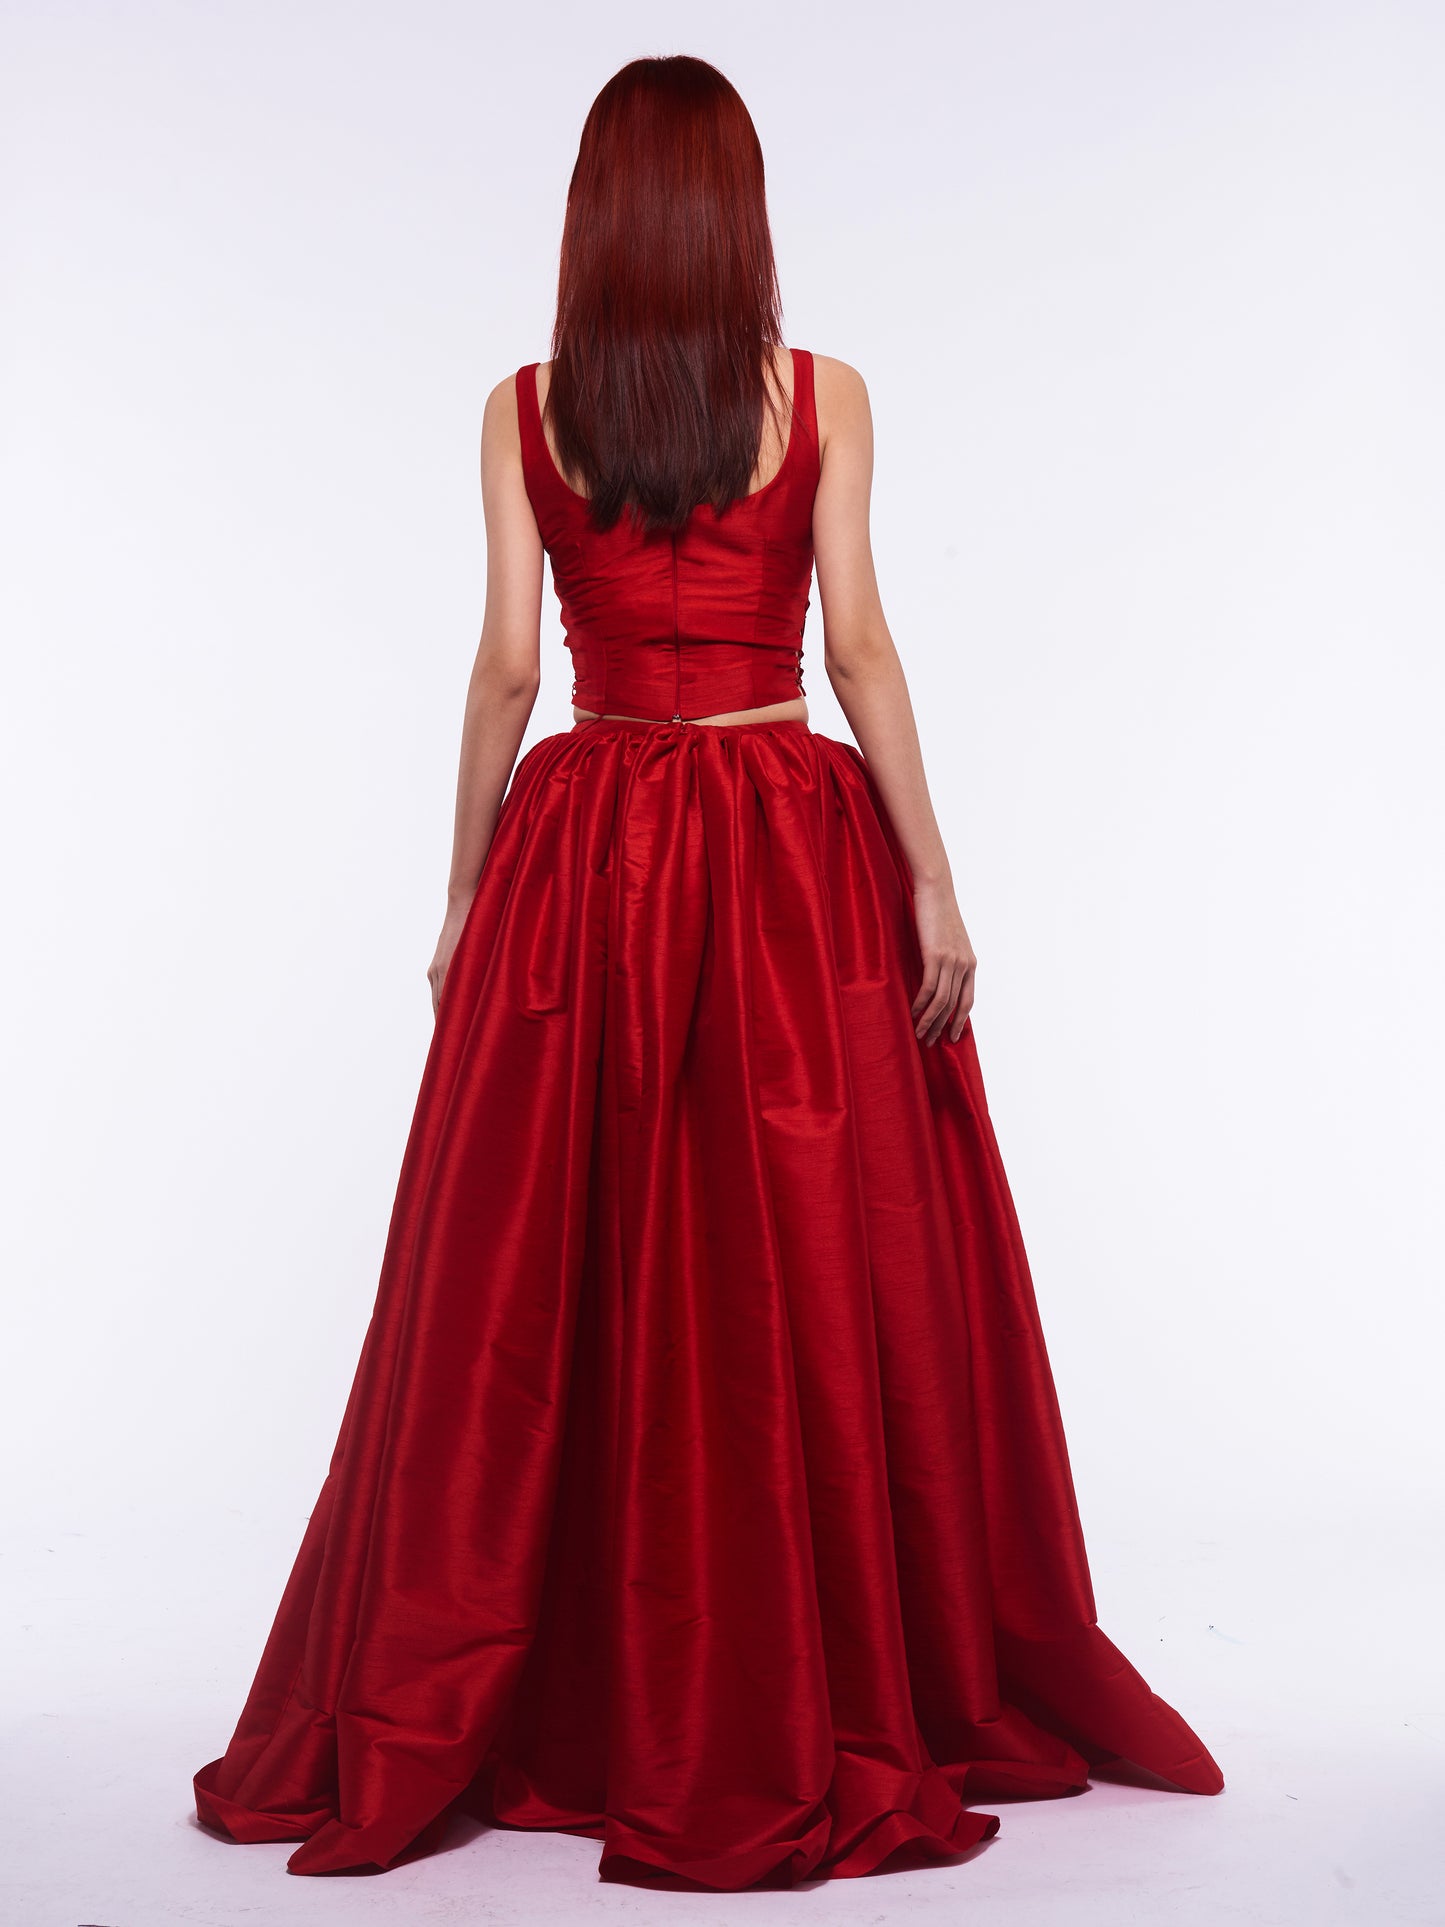 Devon Top & Skirt - Red